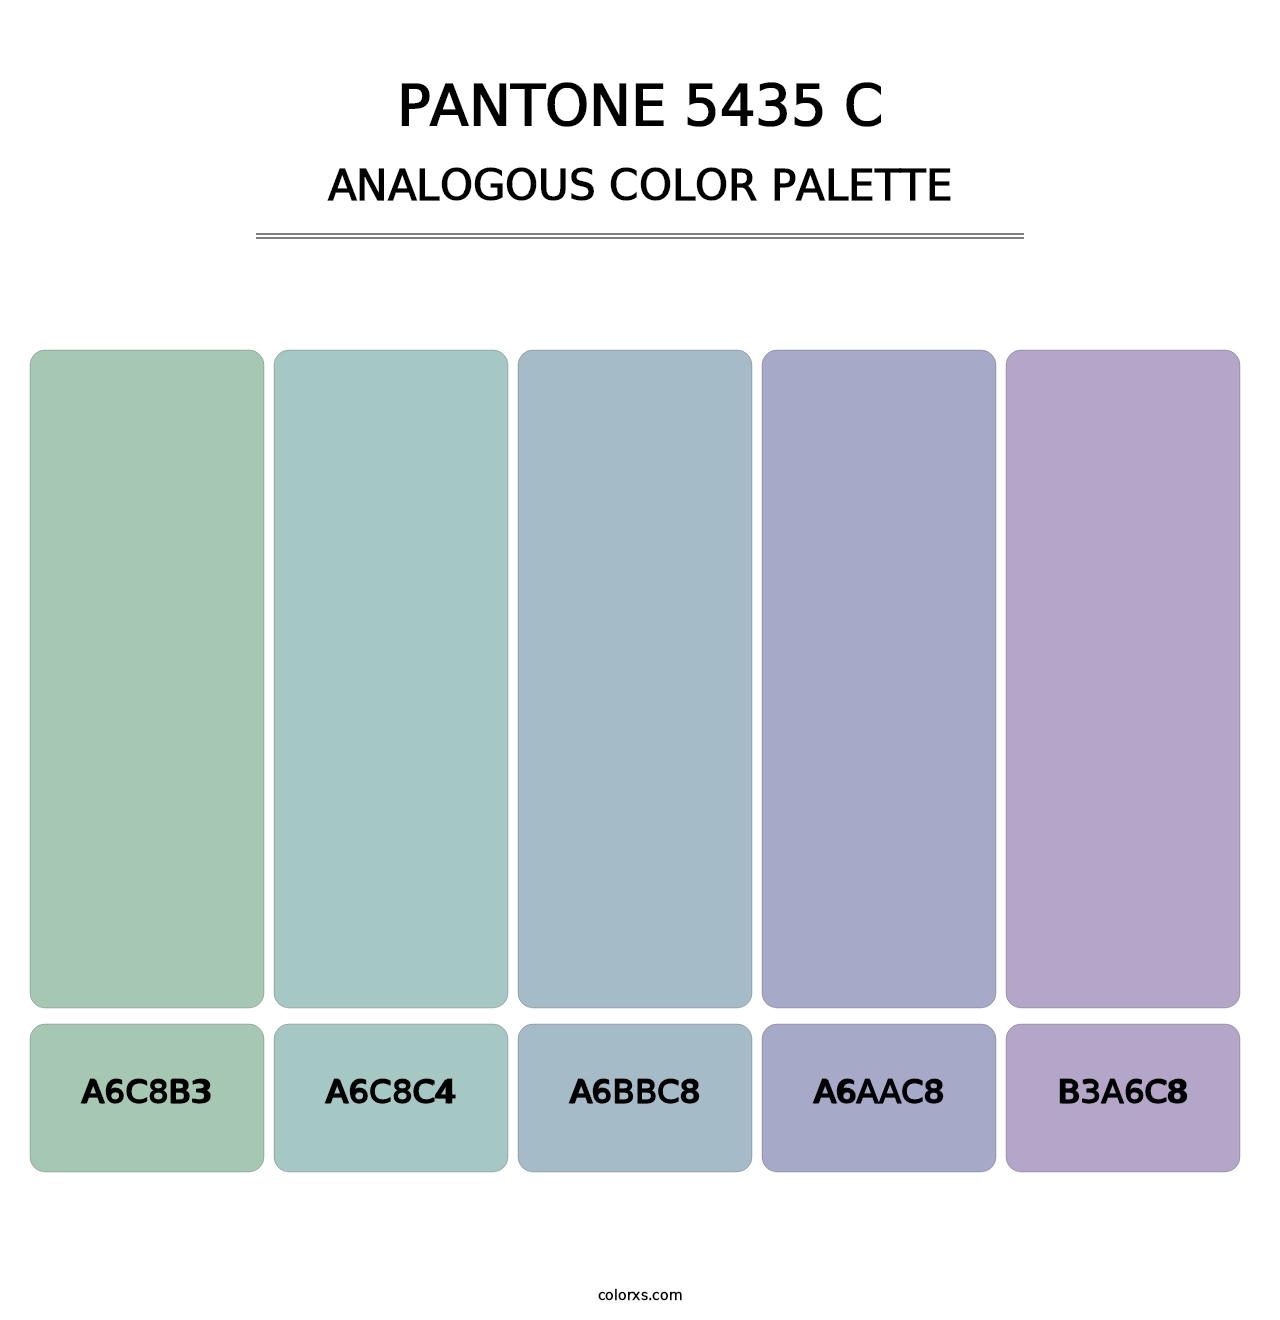 PANTONE 5435 C - Analogous Color Palette